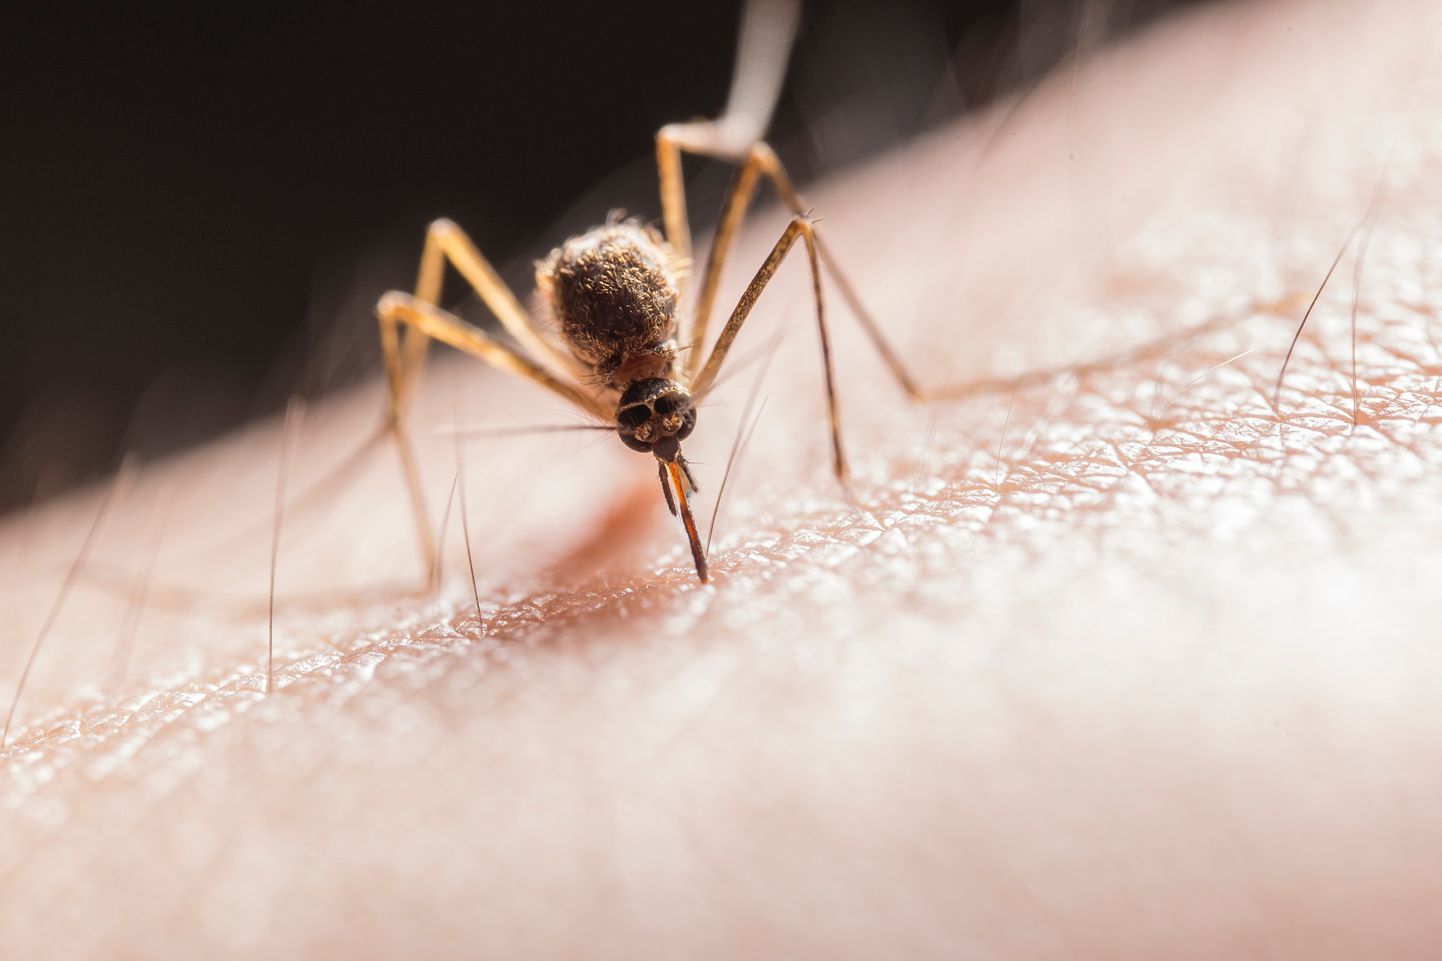 Malaaria on üks levinumaid nakkushaigusi maailmas – igal aastal haigestub malaariasse 300–500 miljonit inimest. Aastas sureb malaariasse 1,5–2,5 miljonit inimest